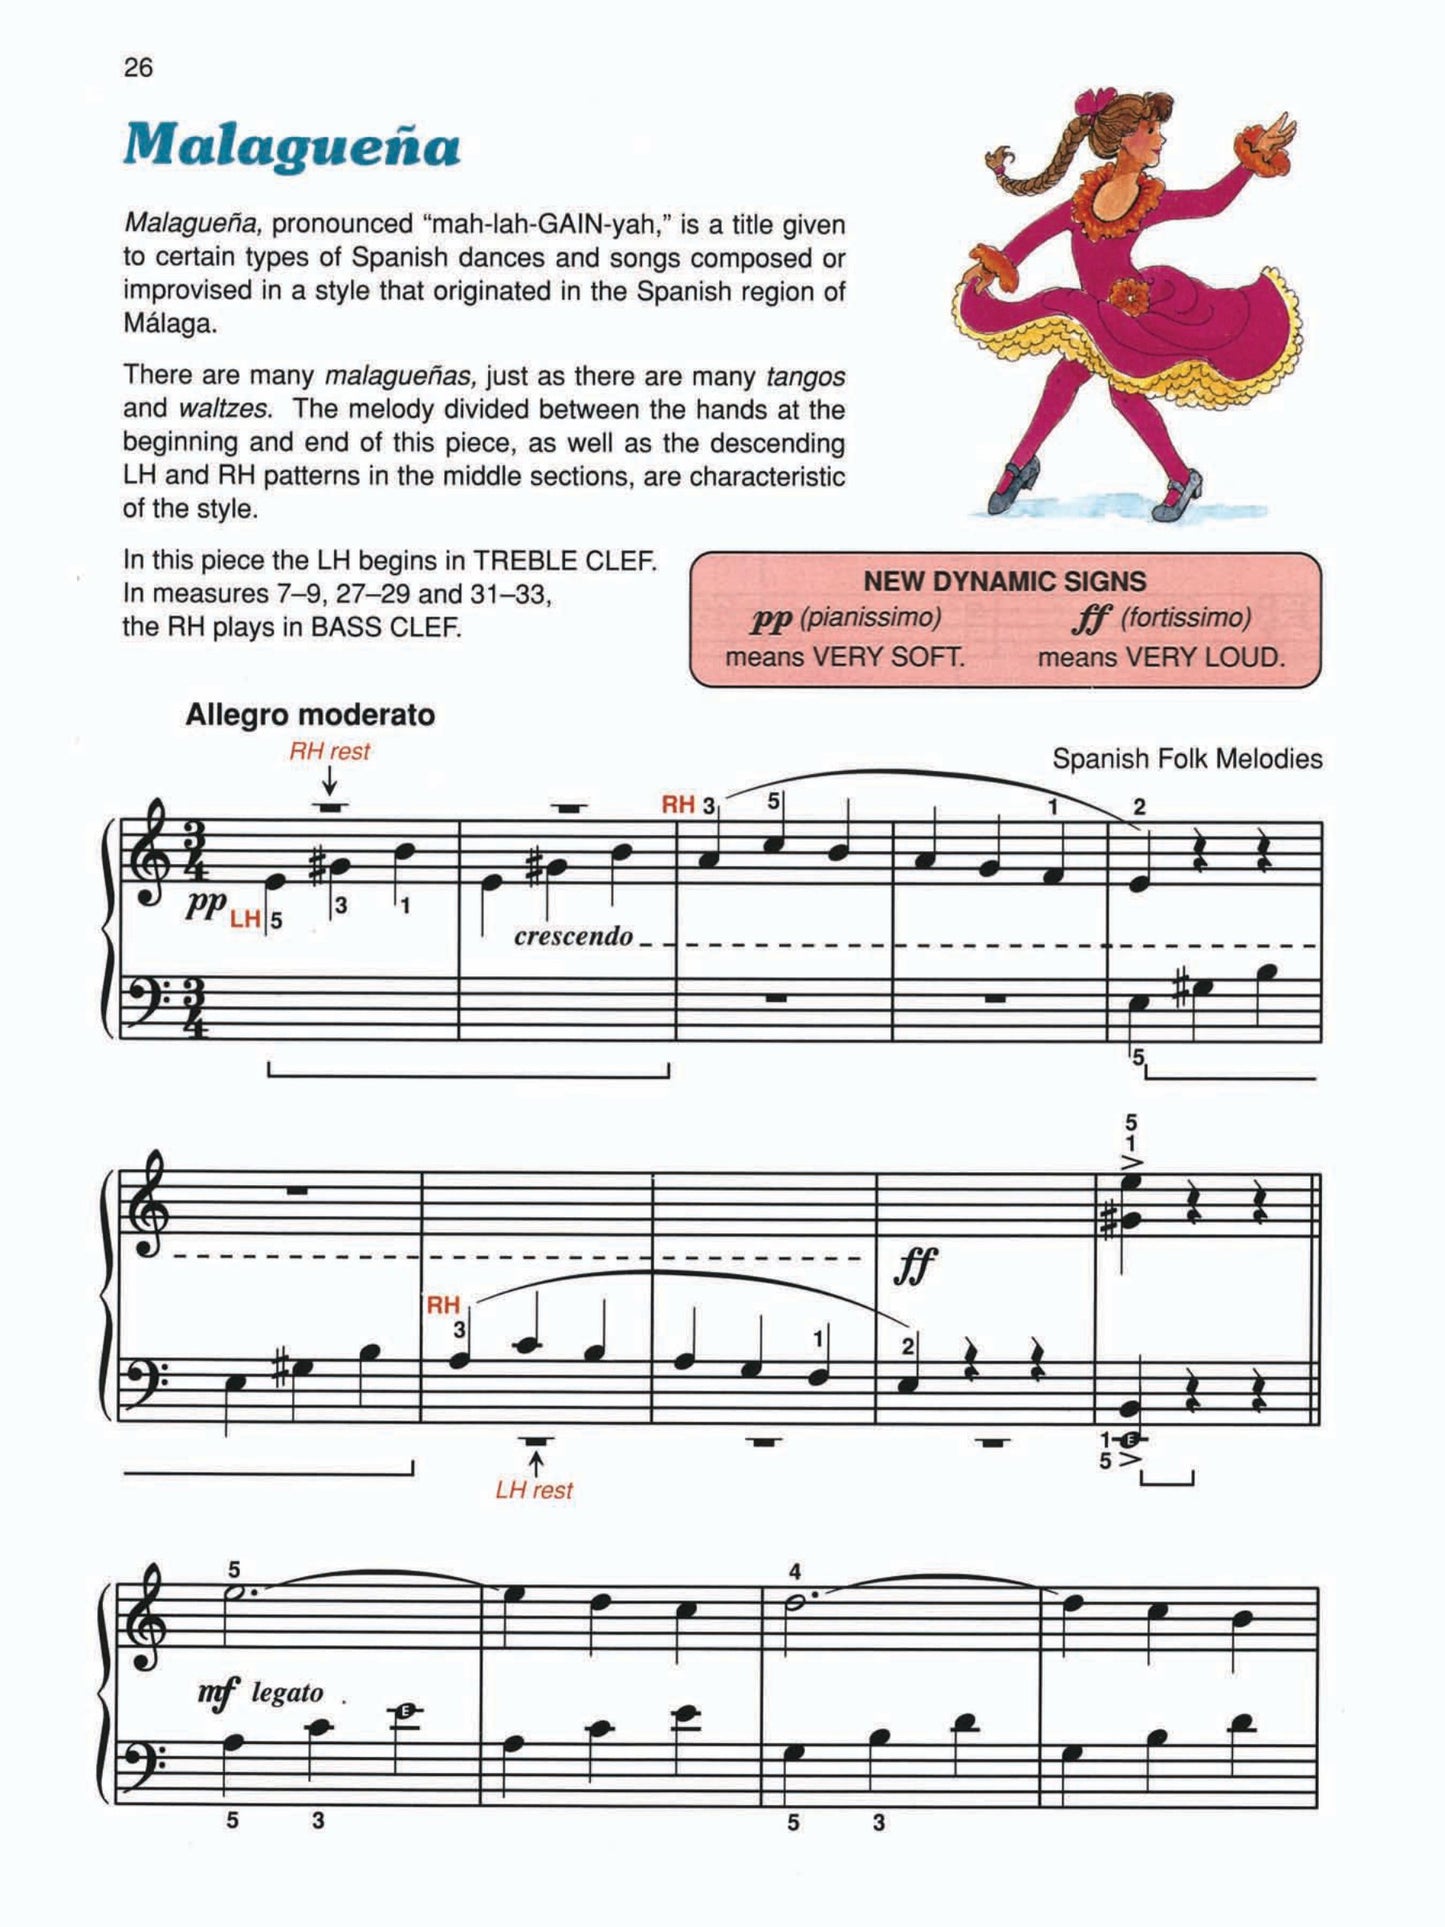 Alfred's Basic Piano Prep Course - Lesson Level E Book